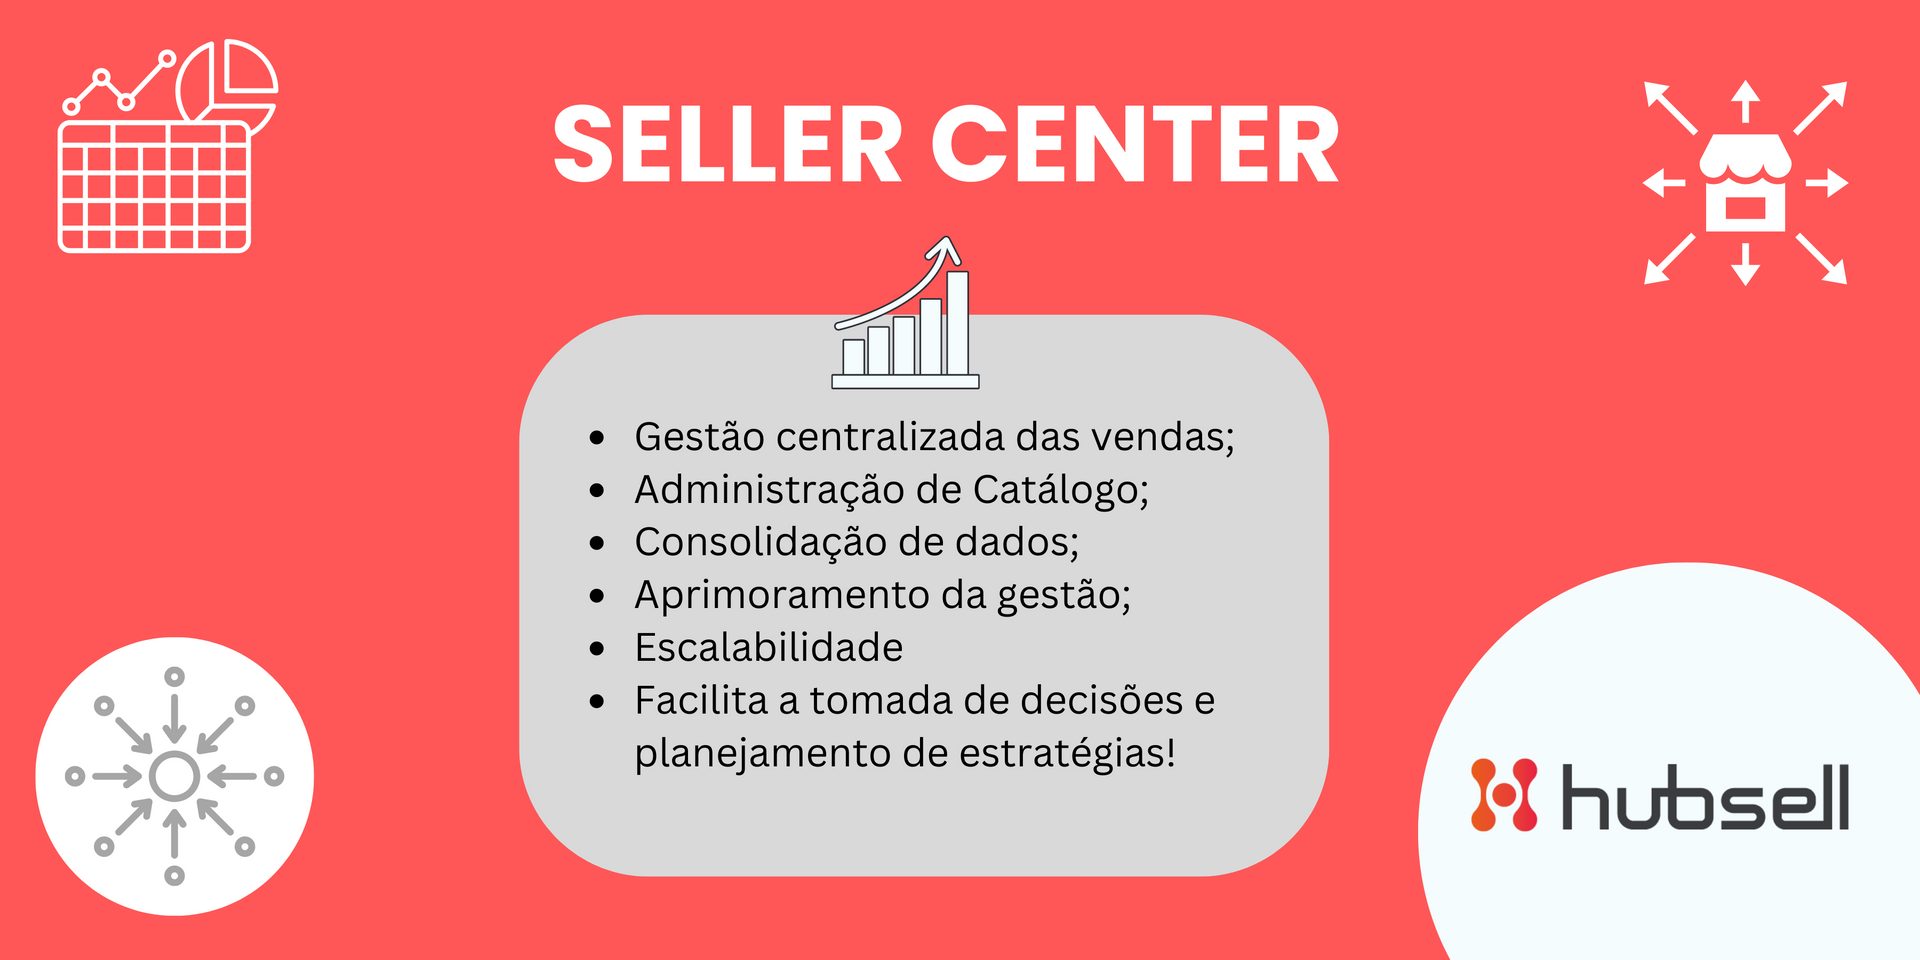 Vantagens e Funcionalidades de um Seller Center